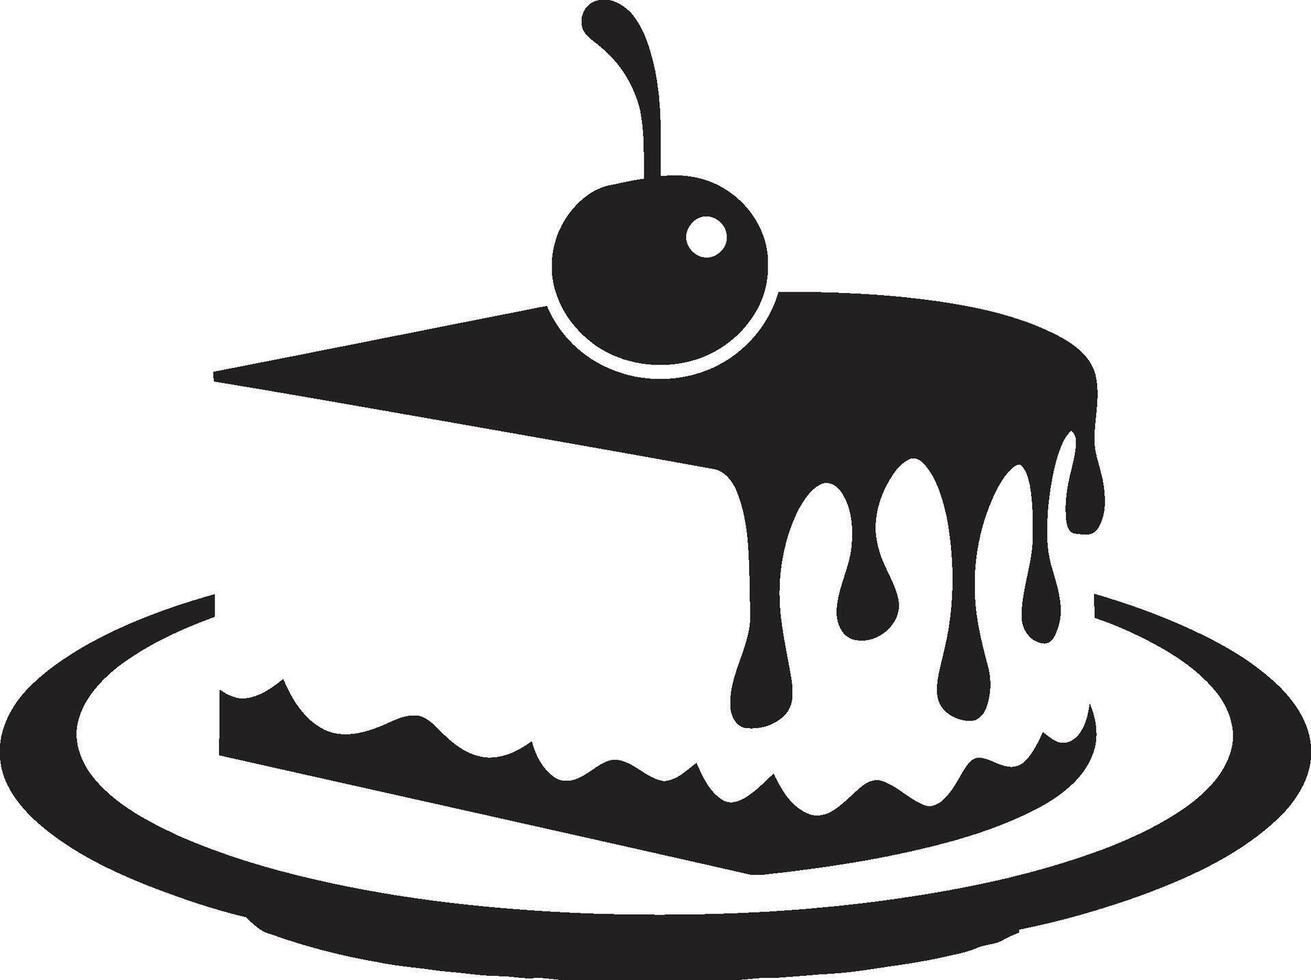 verlockend Symbol schwarz Kuchen Emblem geschichtet Luxus schwarz Kuchen Konzept vektor